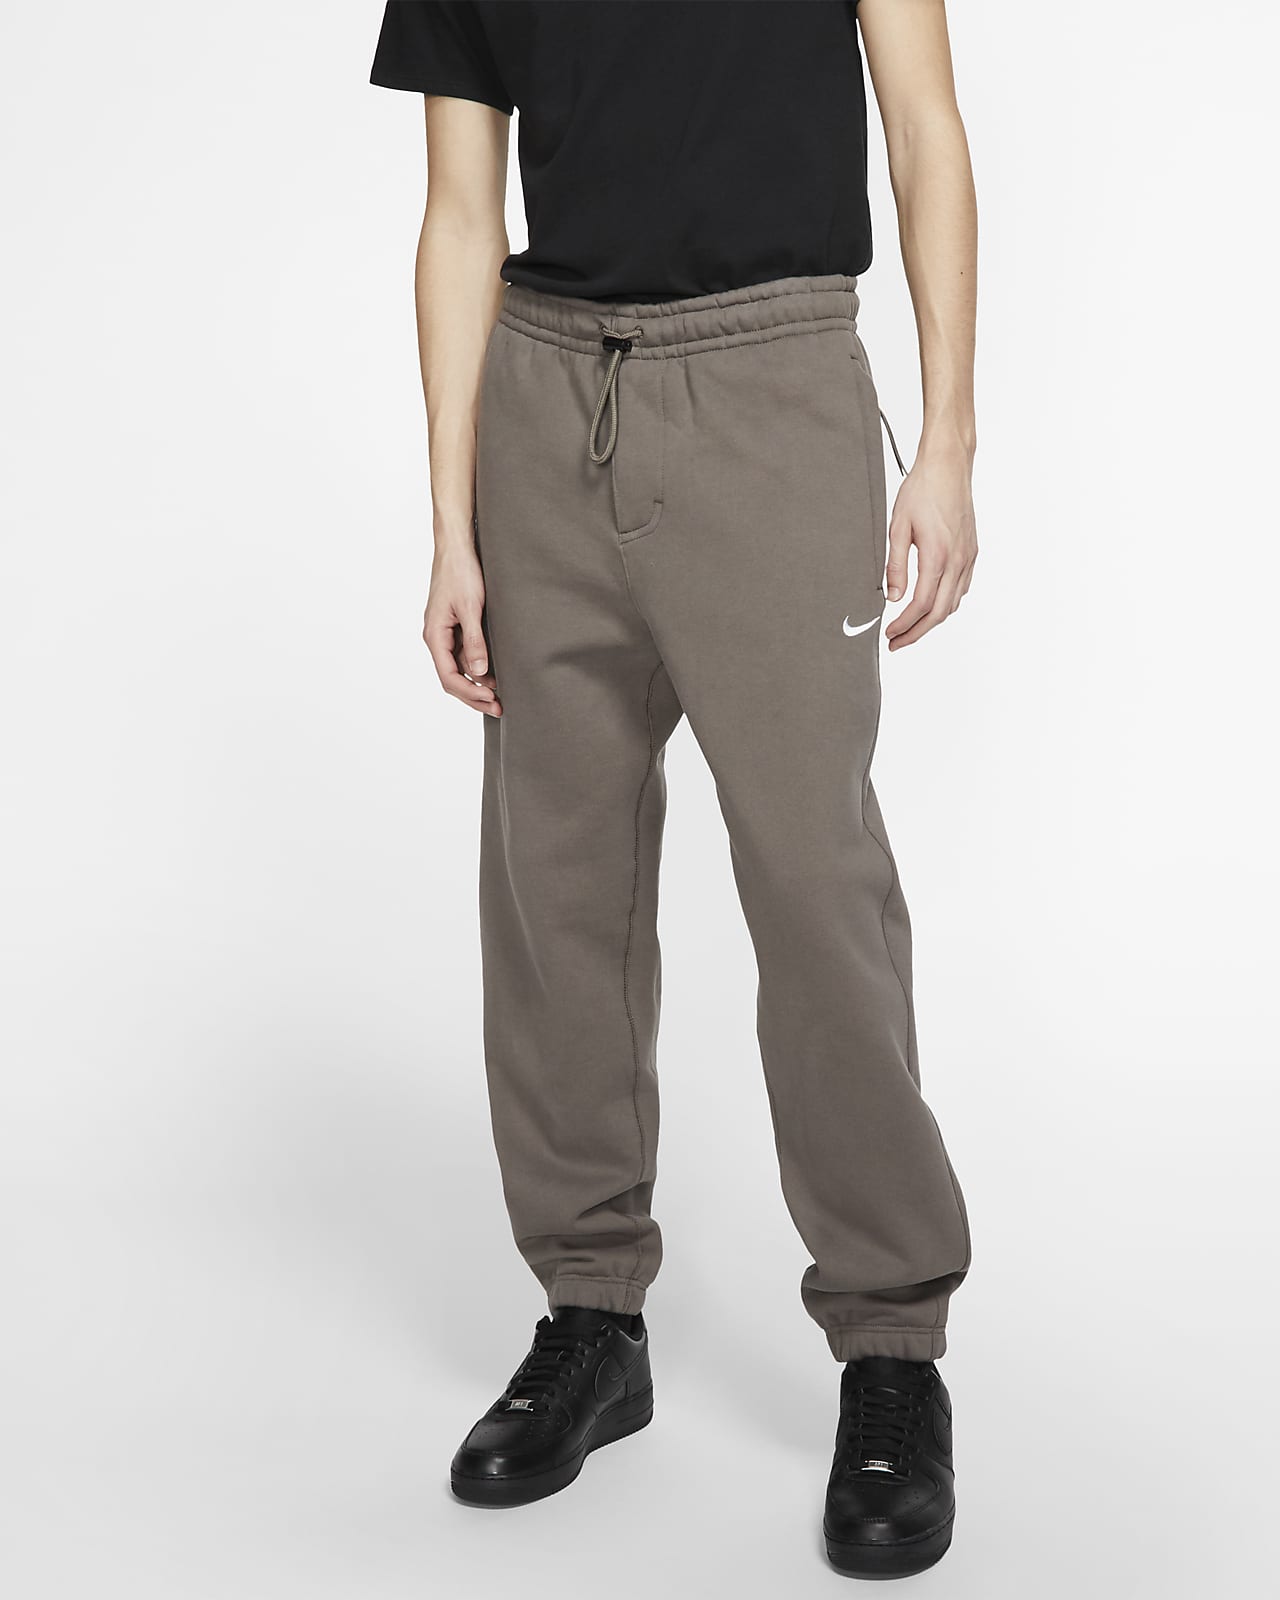 NikeLab Collection Men's Fleece Pants 